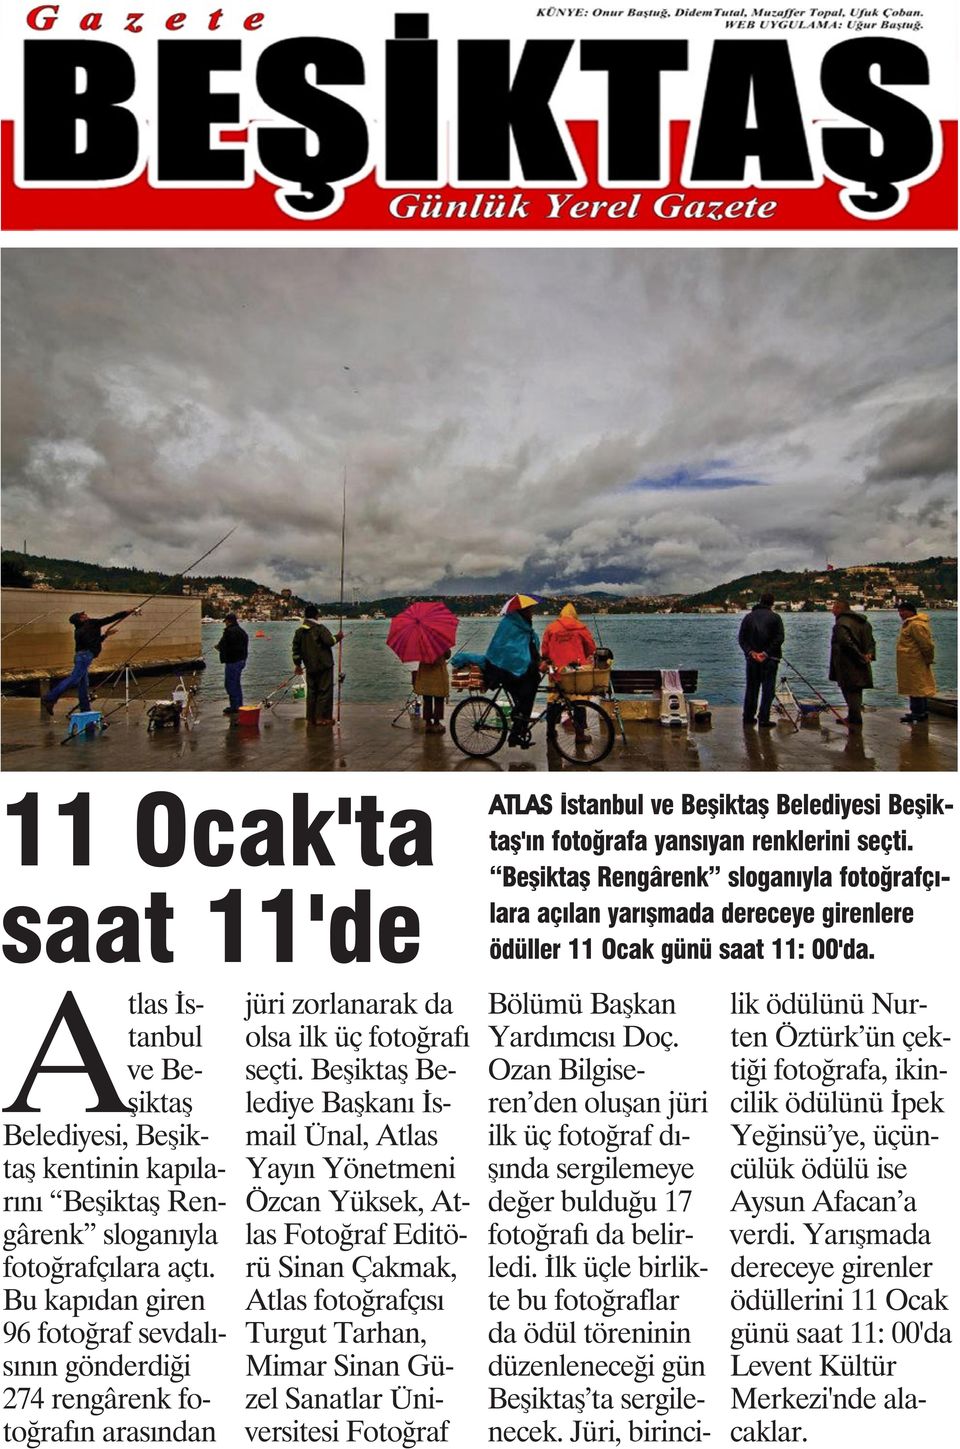 Atlas İstanbul ve Beşiktaş Belediyesi, Beşiktaş kentinin kapılarını Beşiktaş Rengârenk sloganıyla fotoğrafçılara açtı.